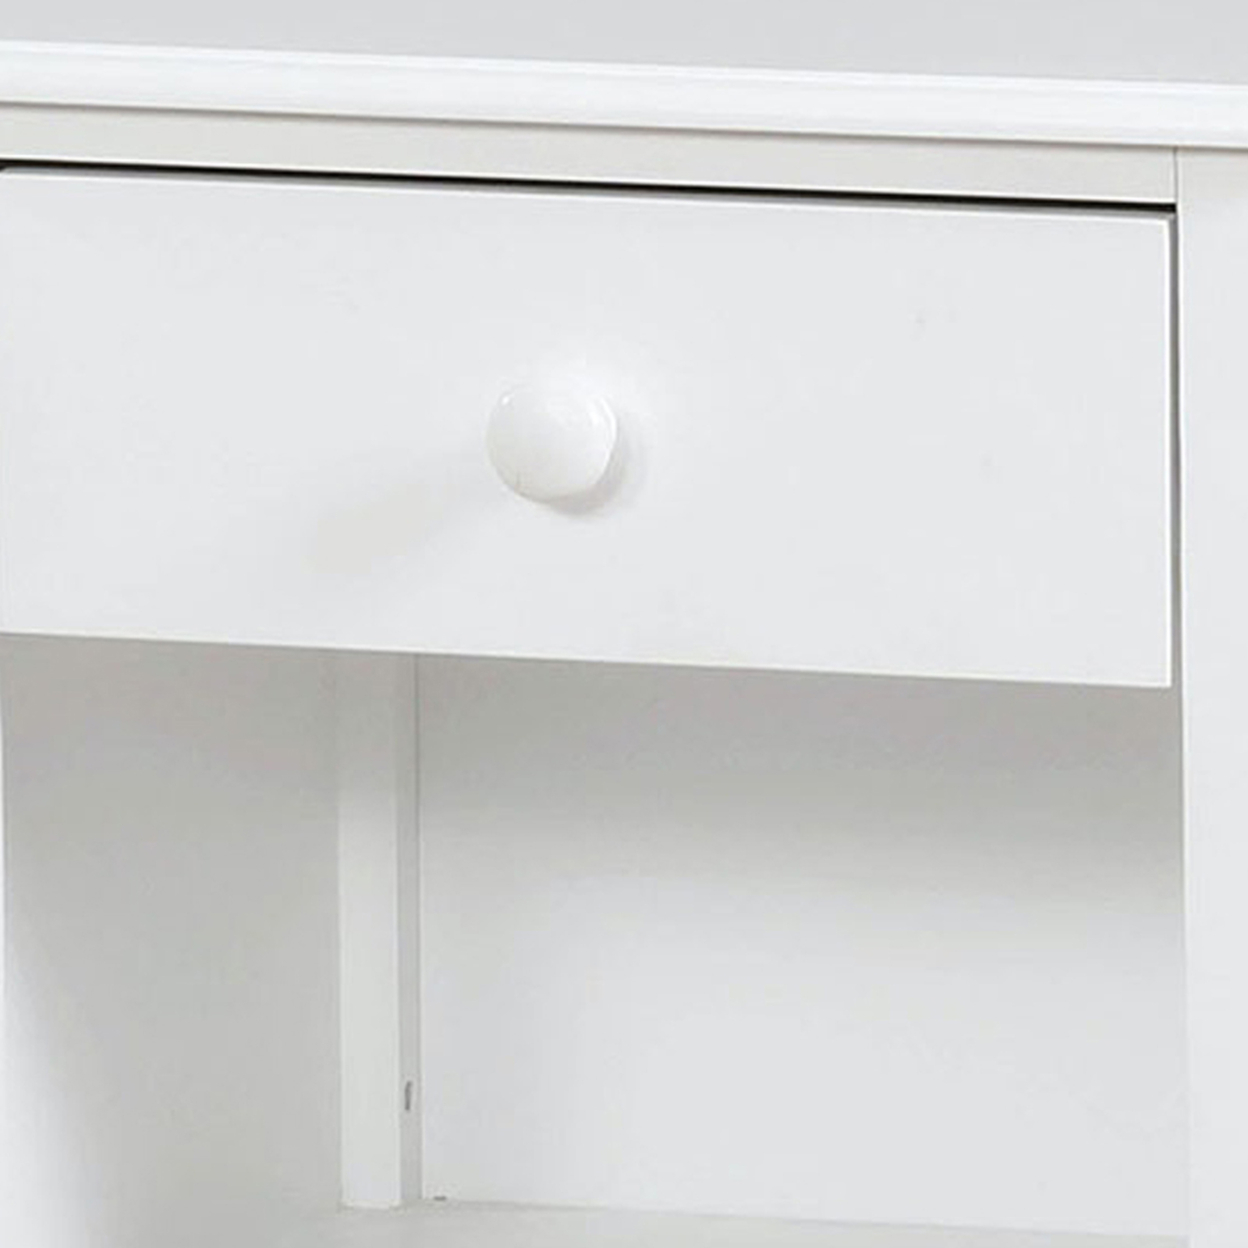 Nightstand With 1 Drawer And 1 Open Shelf, White- Saltoro Sherpi